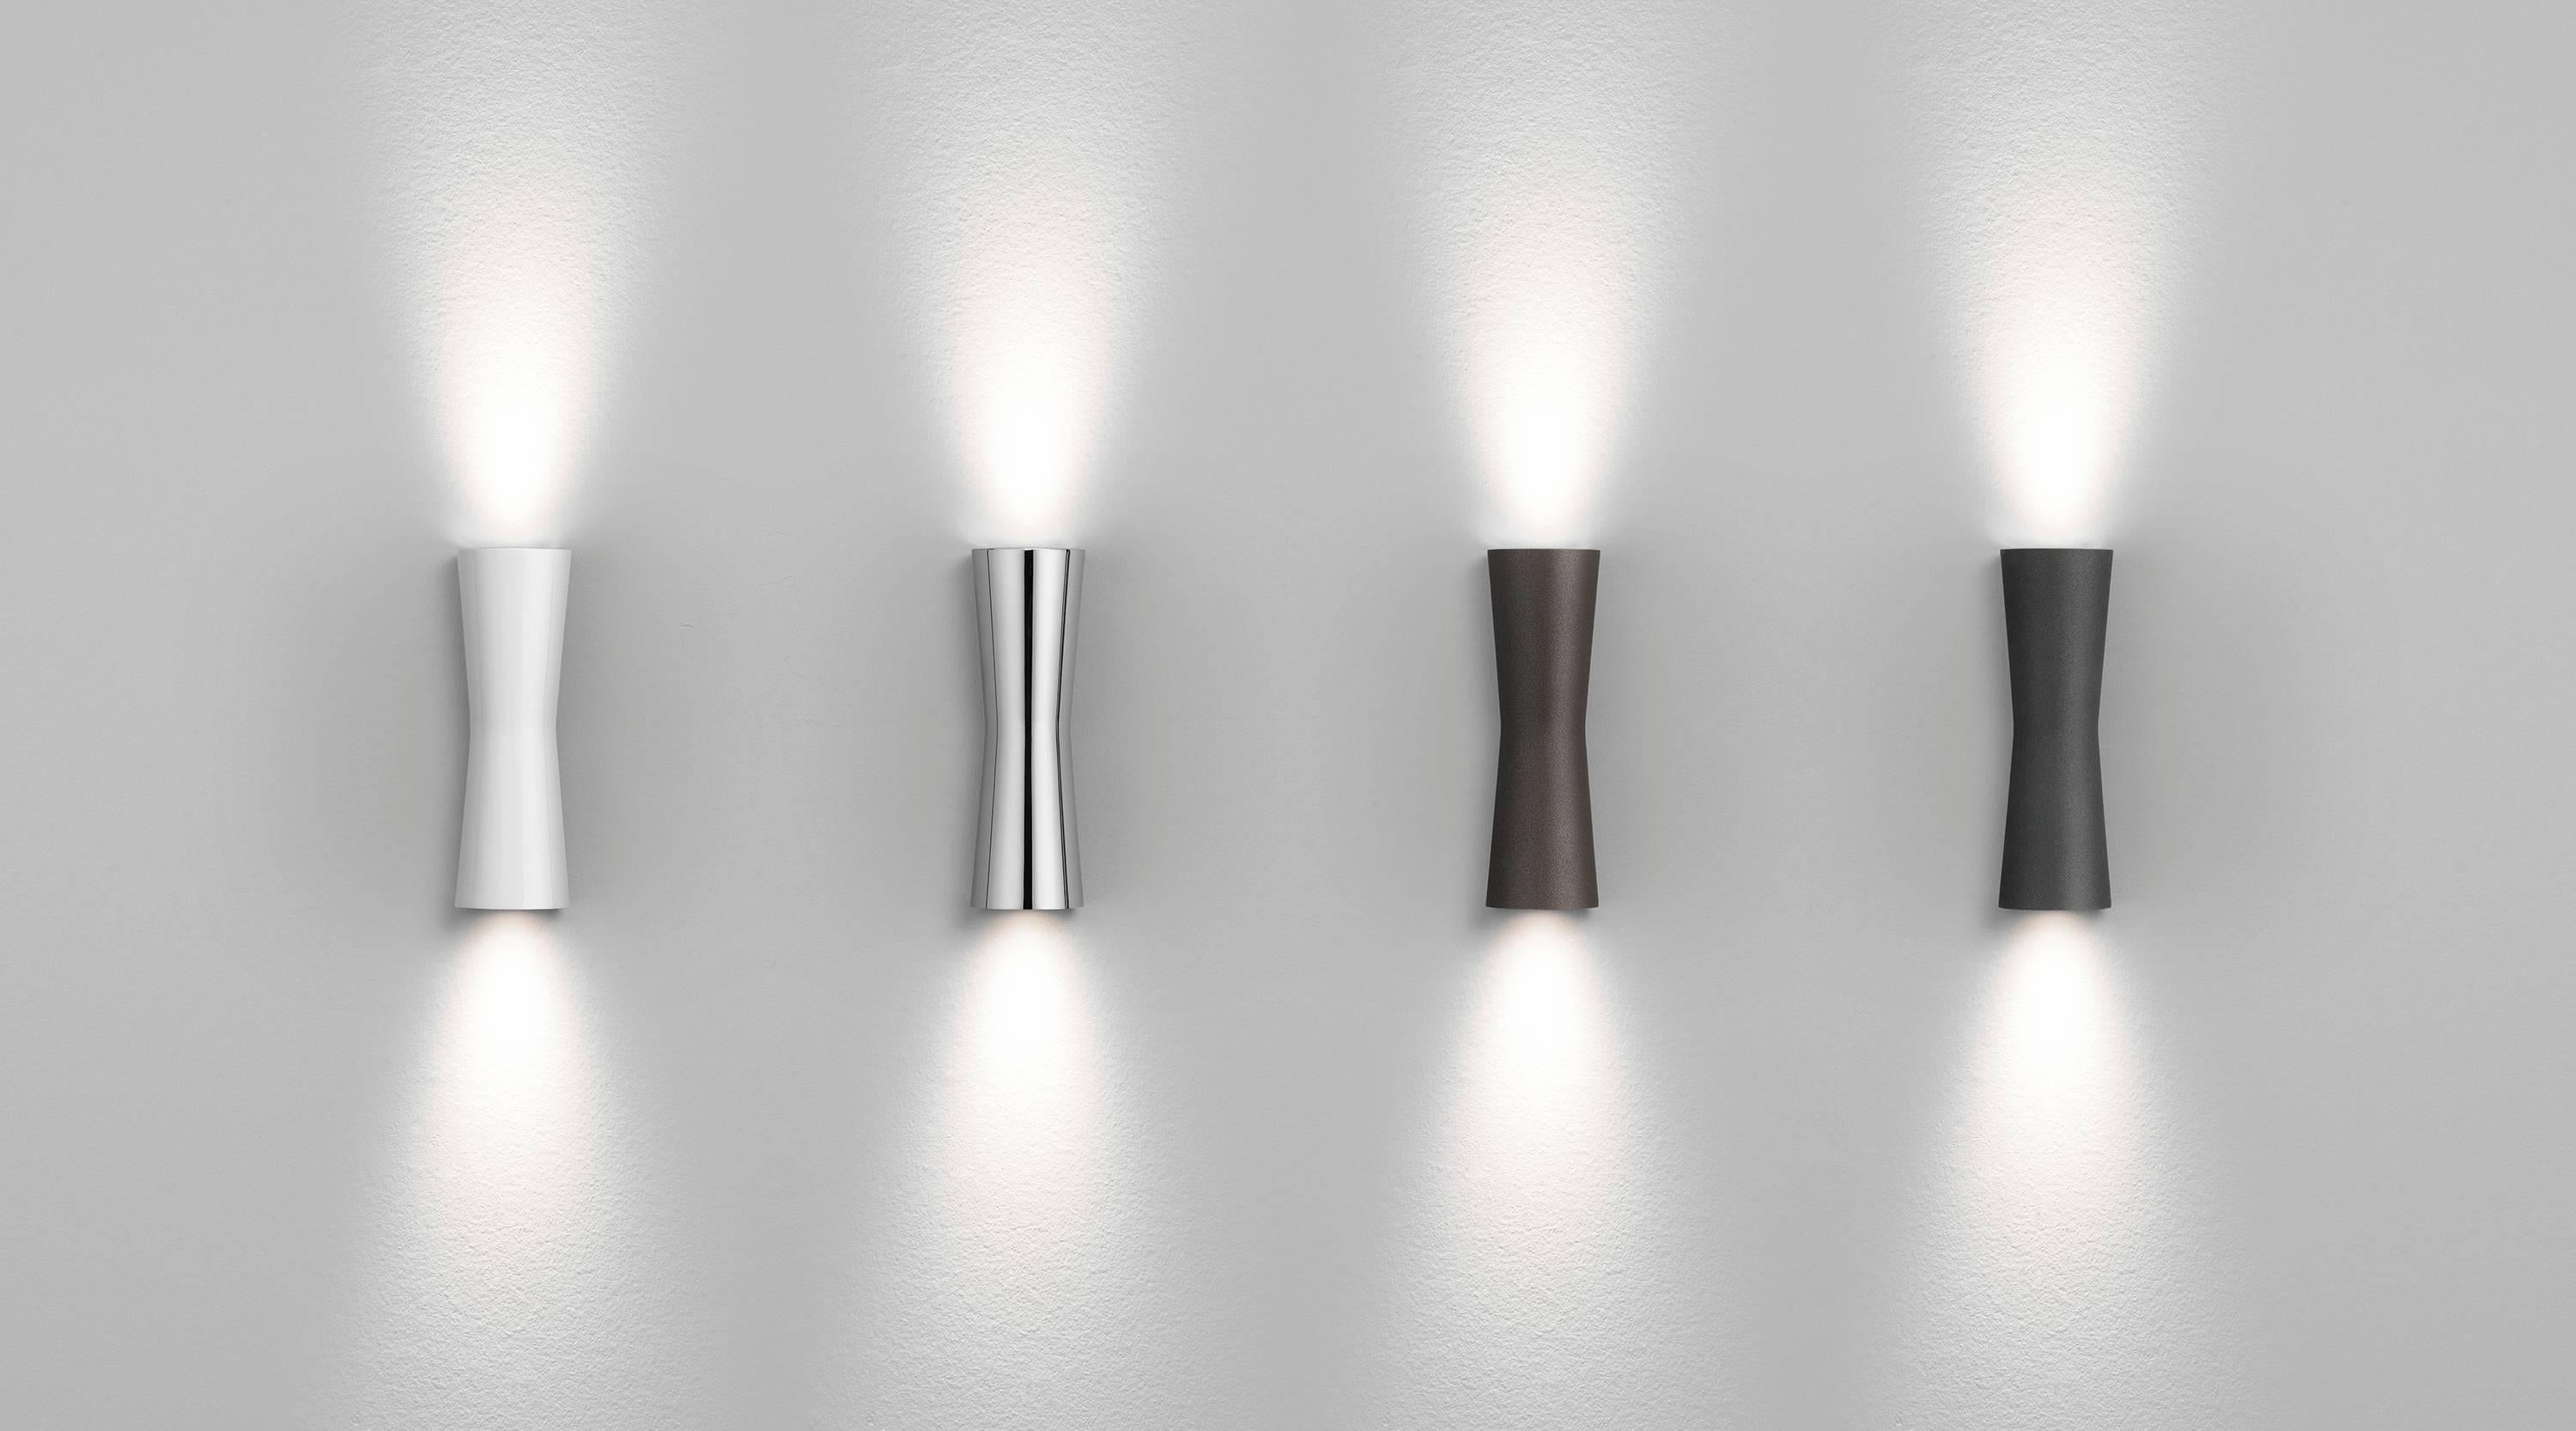 Inspirada en la forma del reloj de arena, la lámpara Clessidra de Antonio Citterio emite luz difusa directa e indirecta. Este asombroso aplique de pared tiene un cuerpo de aluminio fundido a presión con acabado pulverizado y un difusor de PMMA